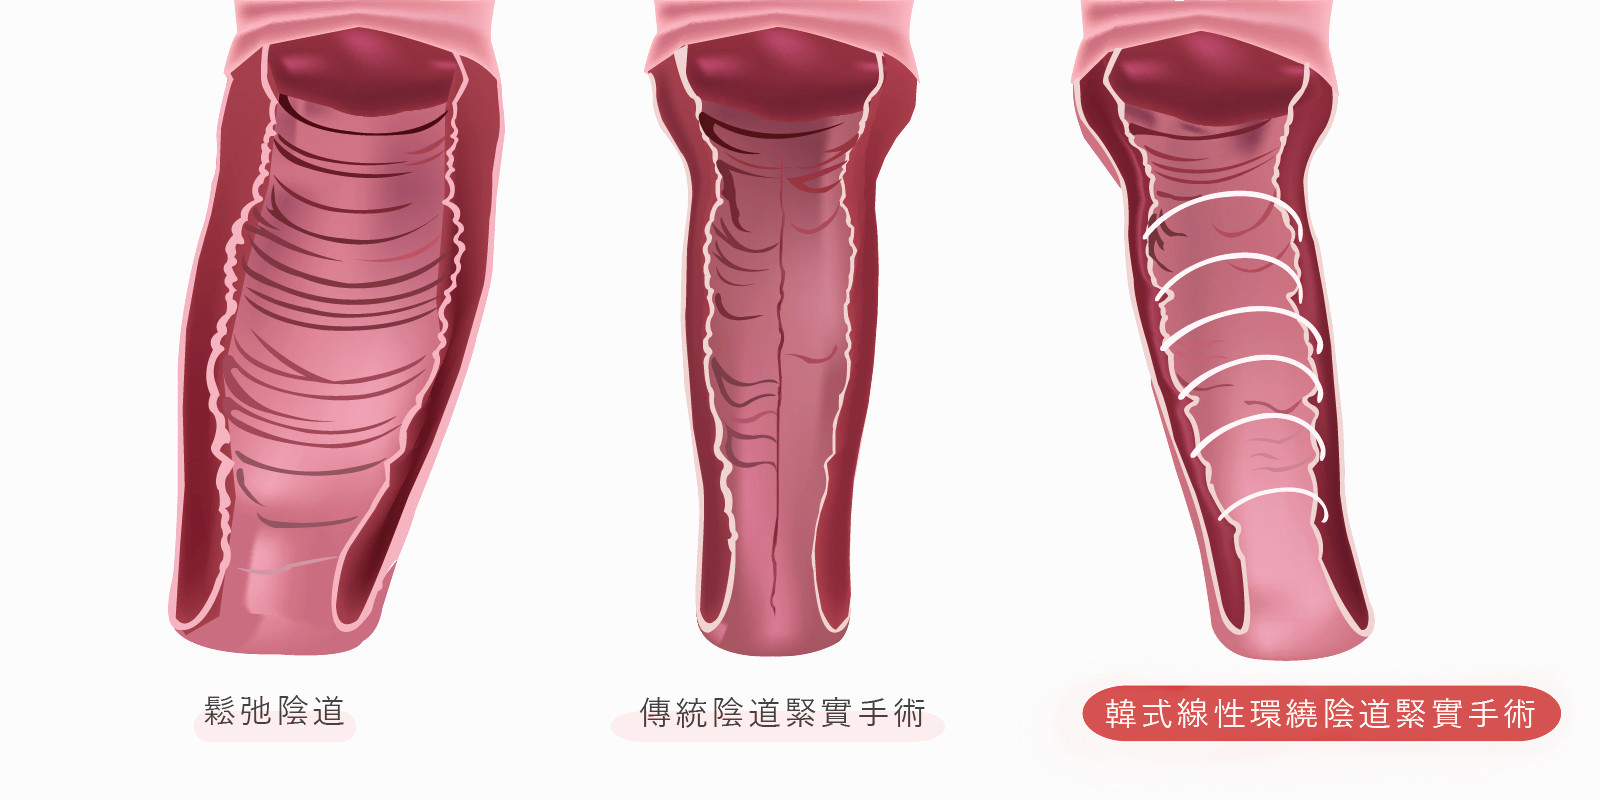 韓式全層線性環繞陰道緊實縮緊手術與傳統手術差異